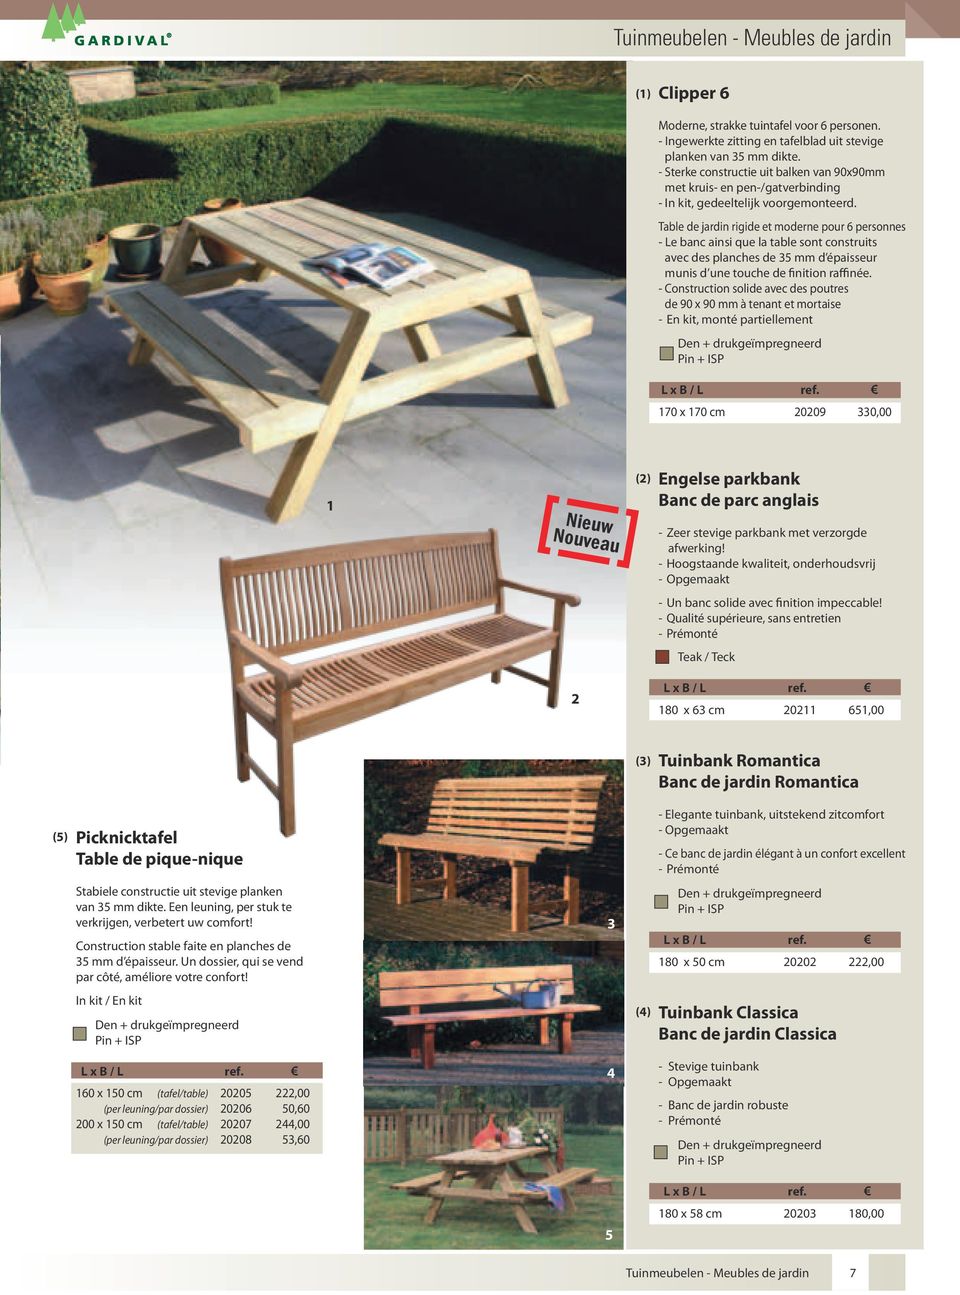 Table de jardin rigide et moderne pour 6 personnes - Le banc ainsi que la table sont construits avec des planches de 5 mm d épaisseur munis d une touche de finition raffinée.